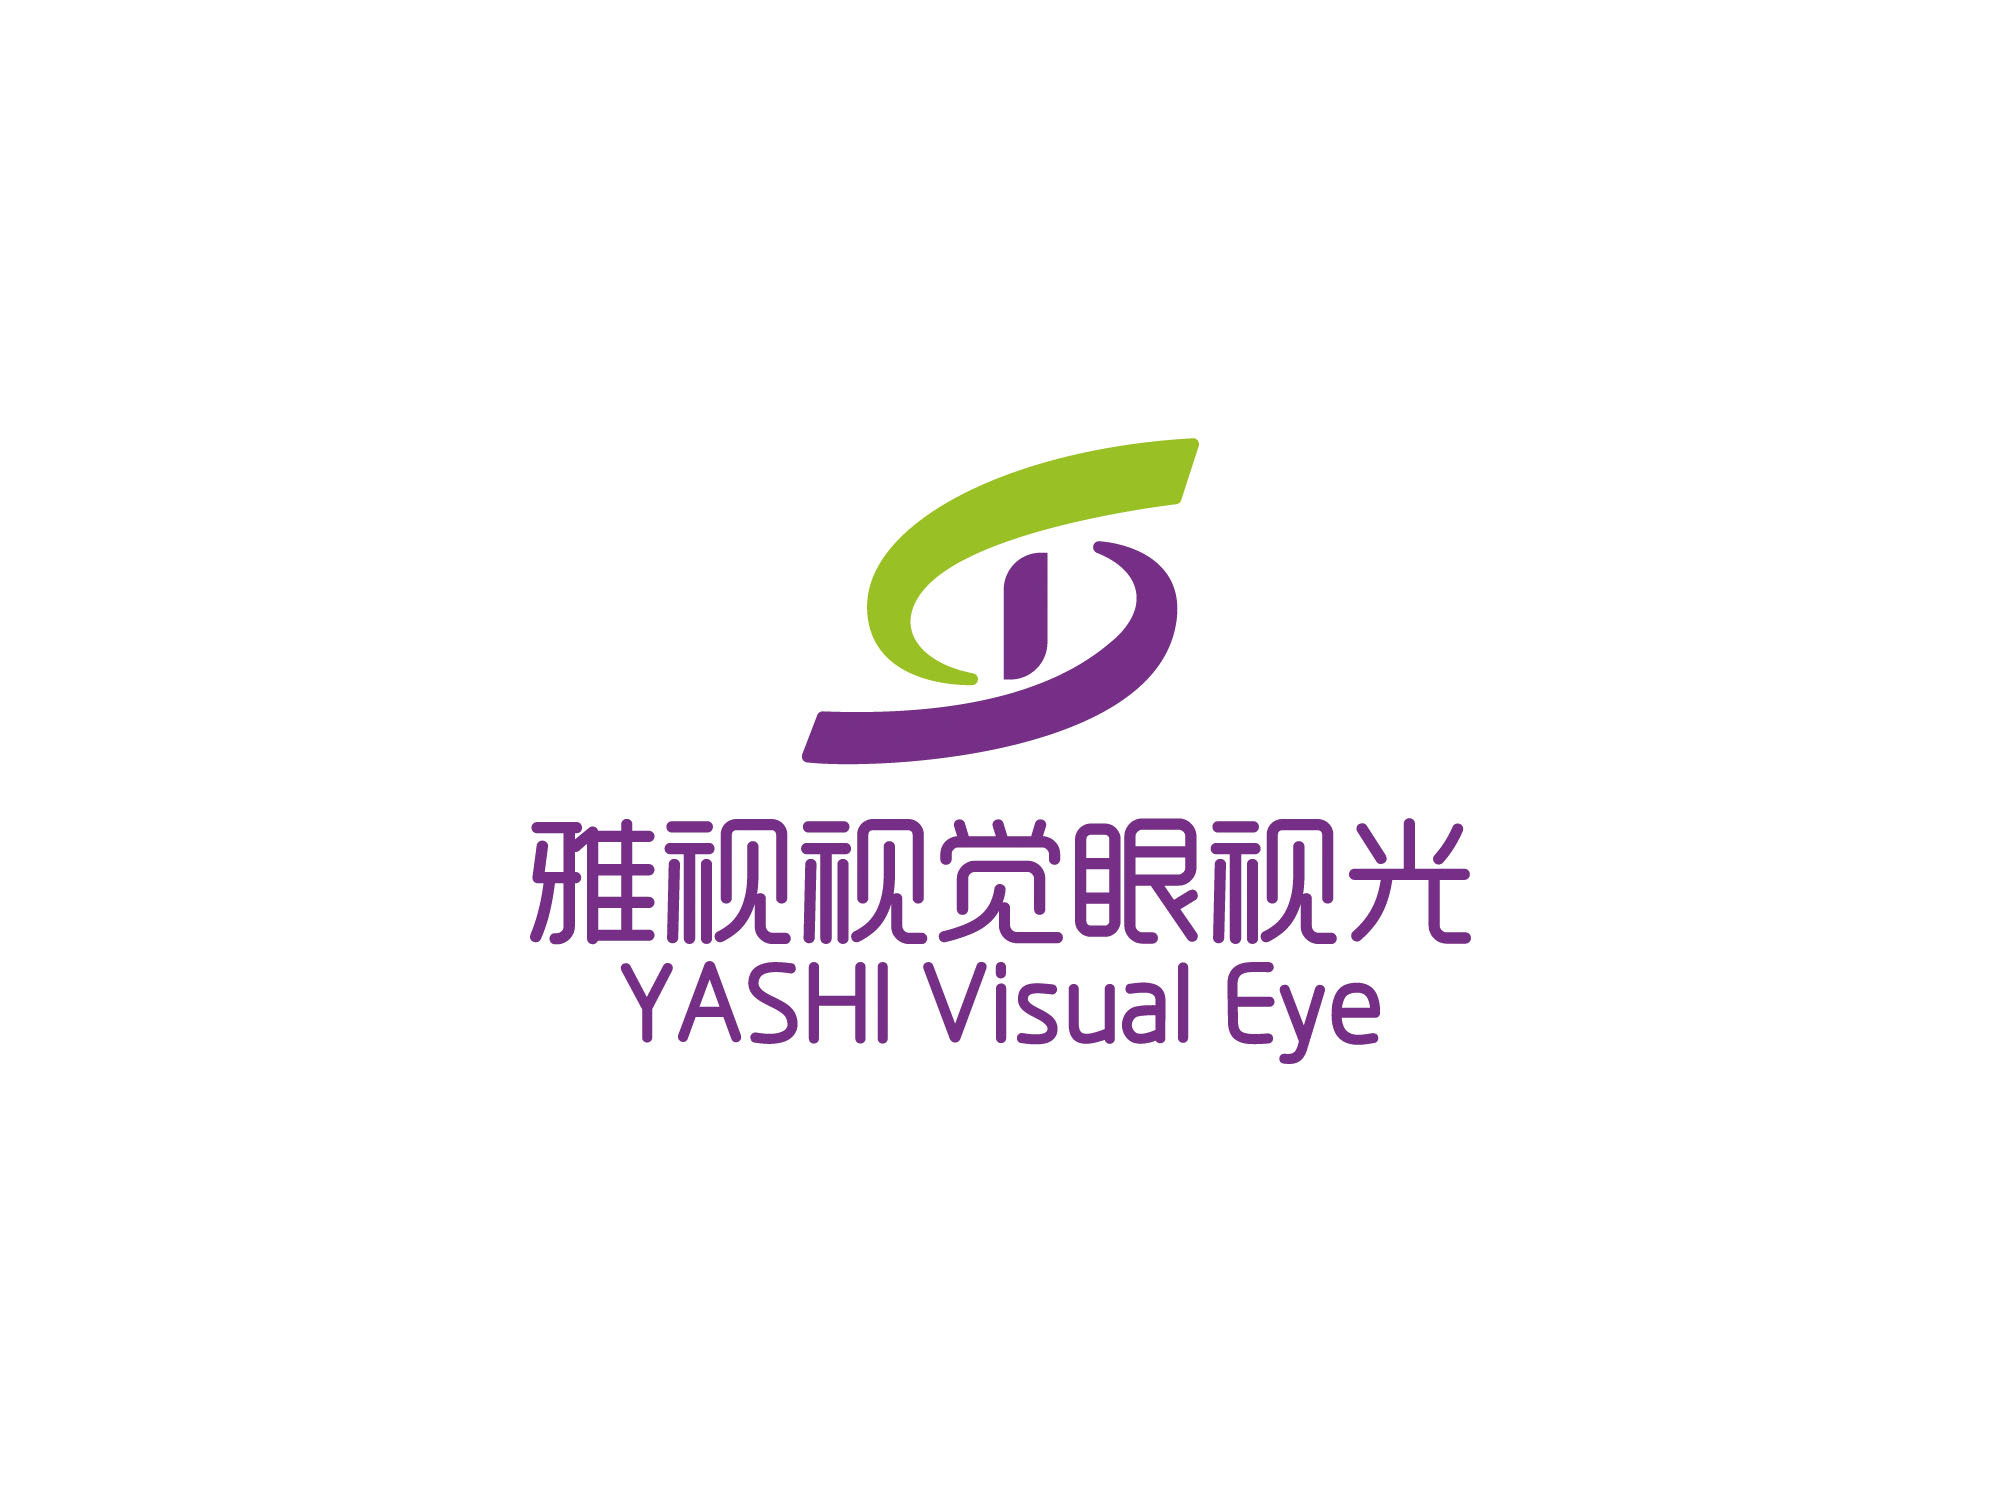 雅视视觉眼视光 logo设计